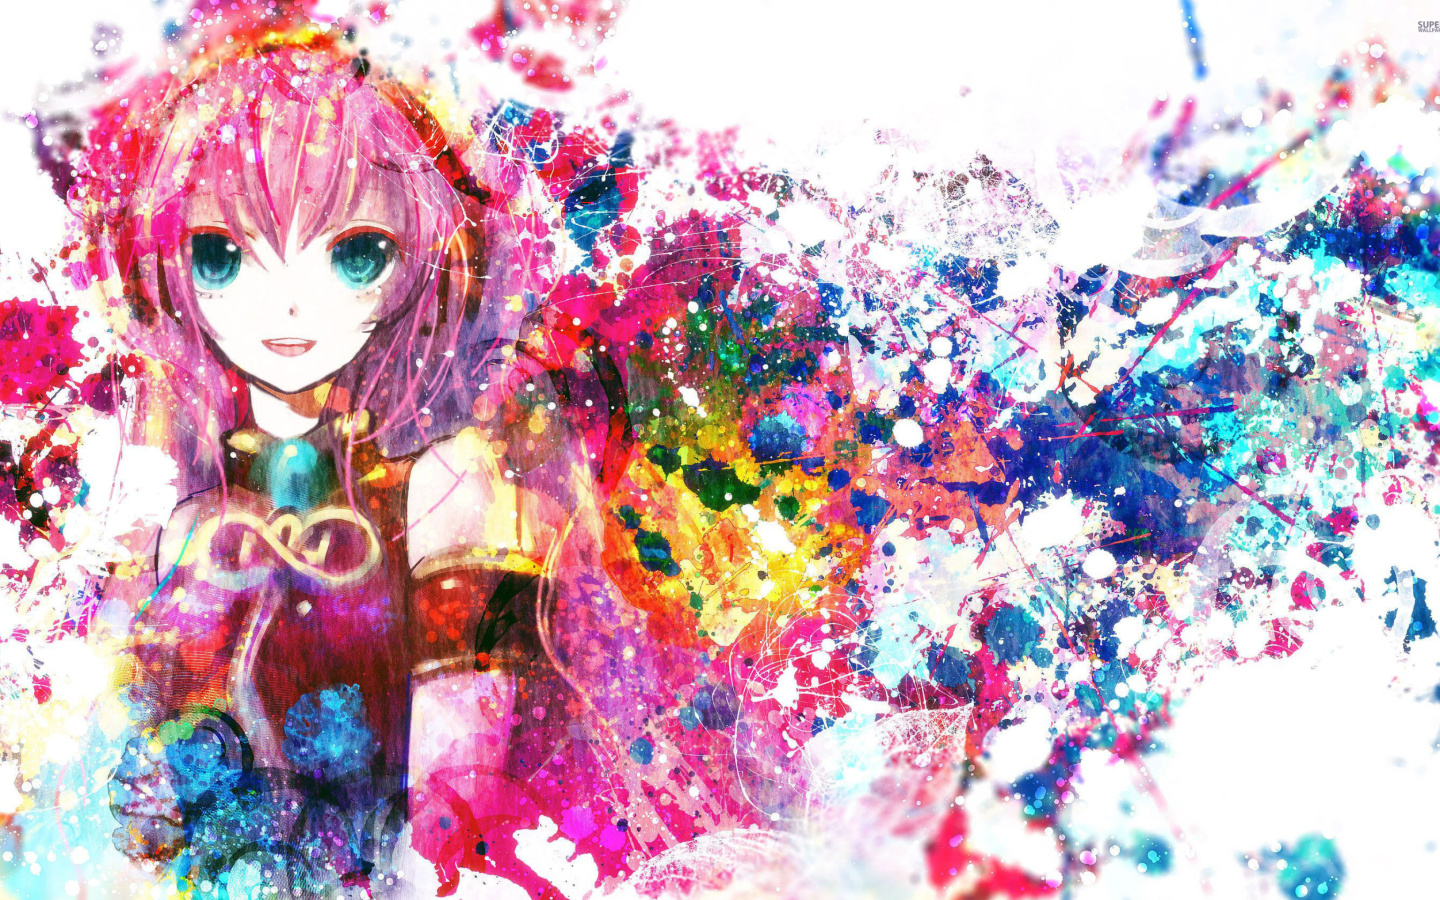 Megurine Luka Vocaloid wallpaper 1440x900